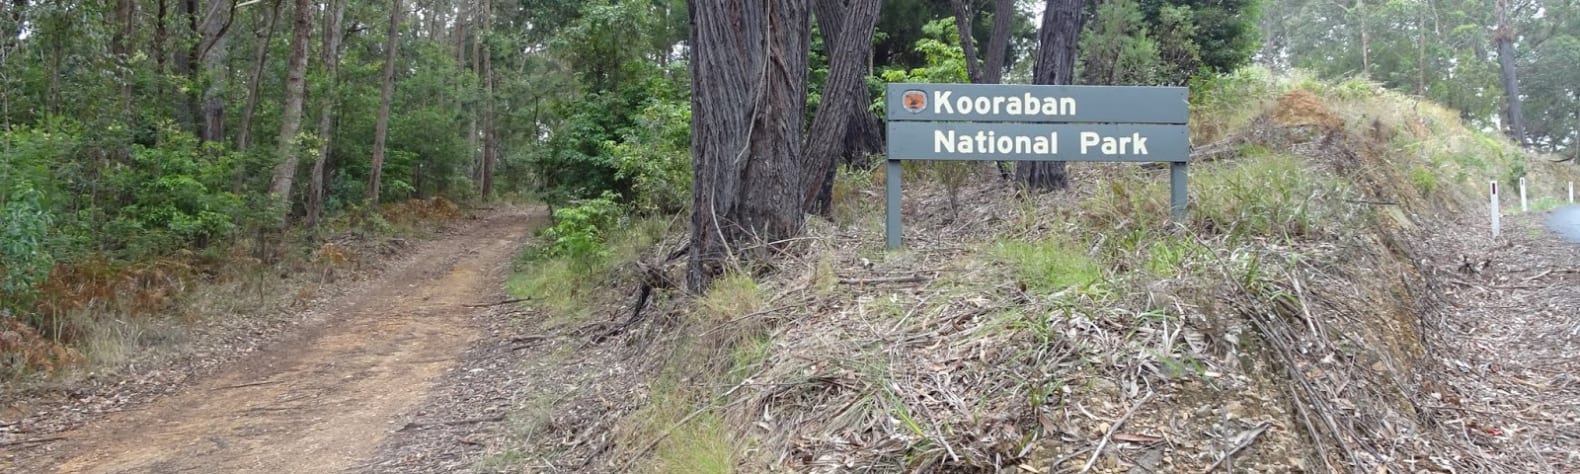 Kooraban National Park